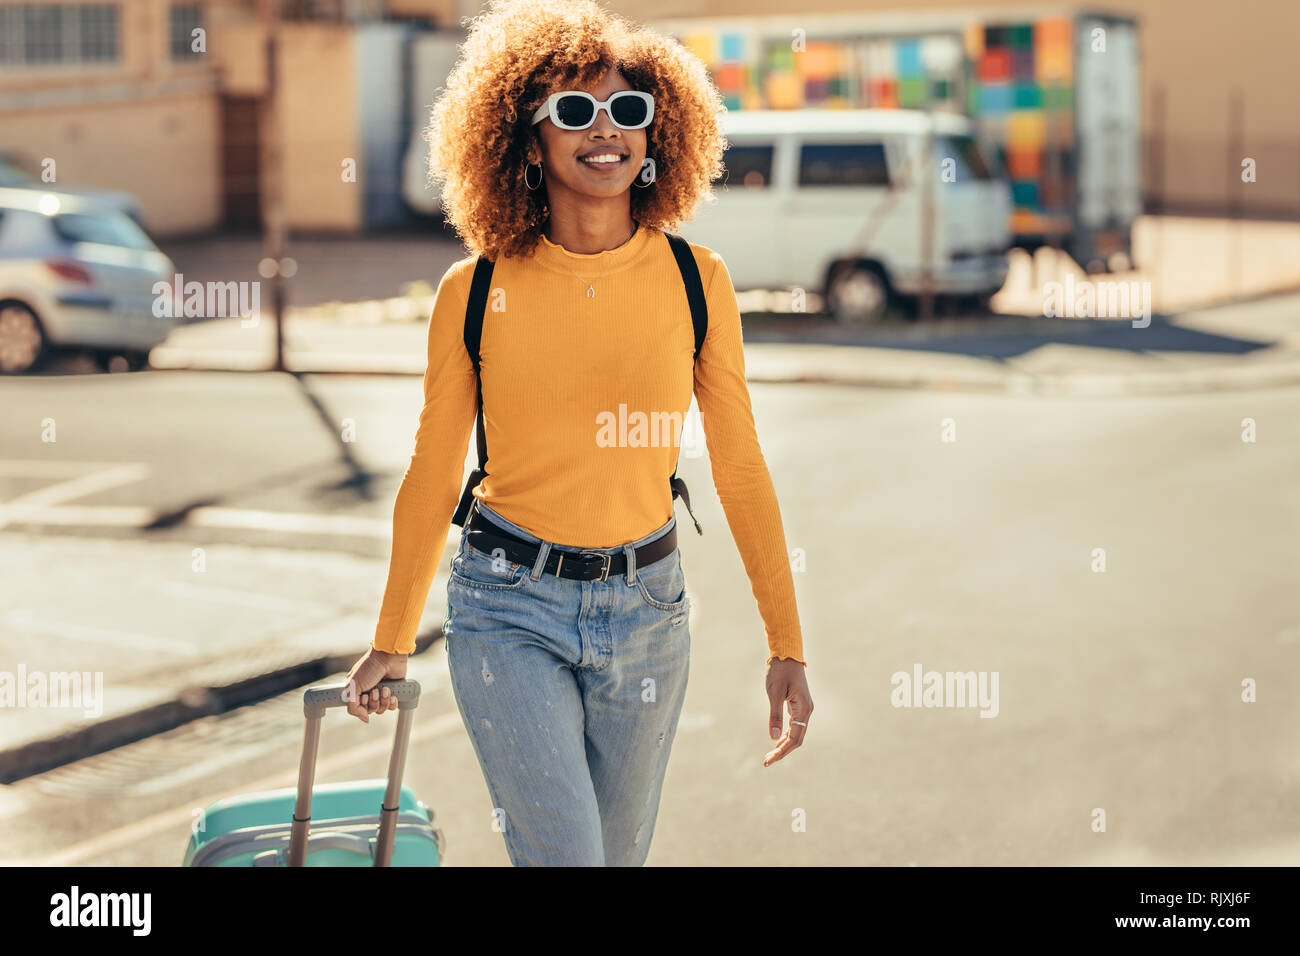 Weibliche afro-amerikanische Reisende im Urlaub Wandern rund um die Stadt ziehen ihre Trolley Tasche. Lächelnd touristische Frau mit Sonnenbrille und einen Rucksack wa Stockfoto